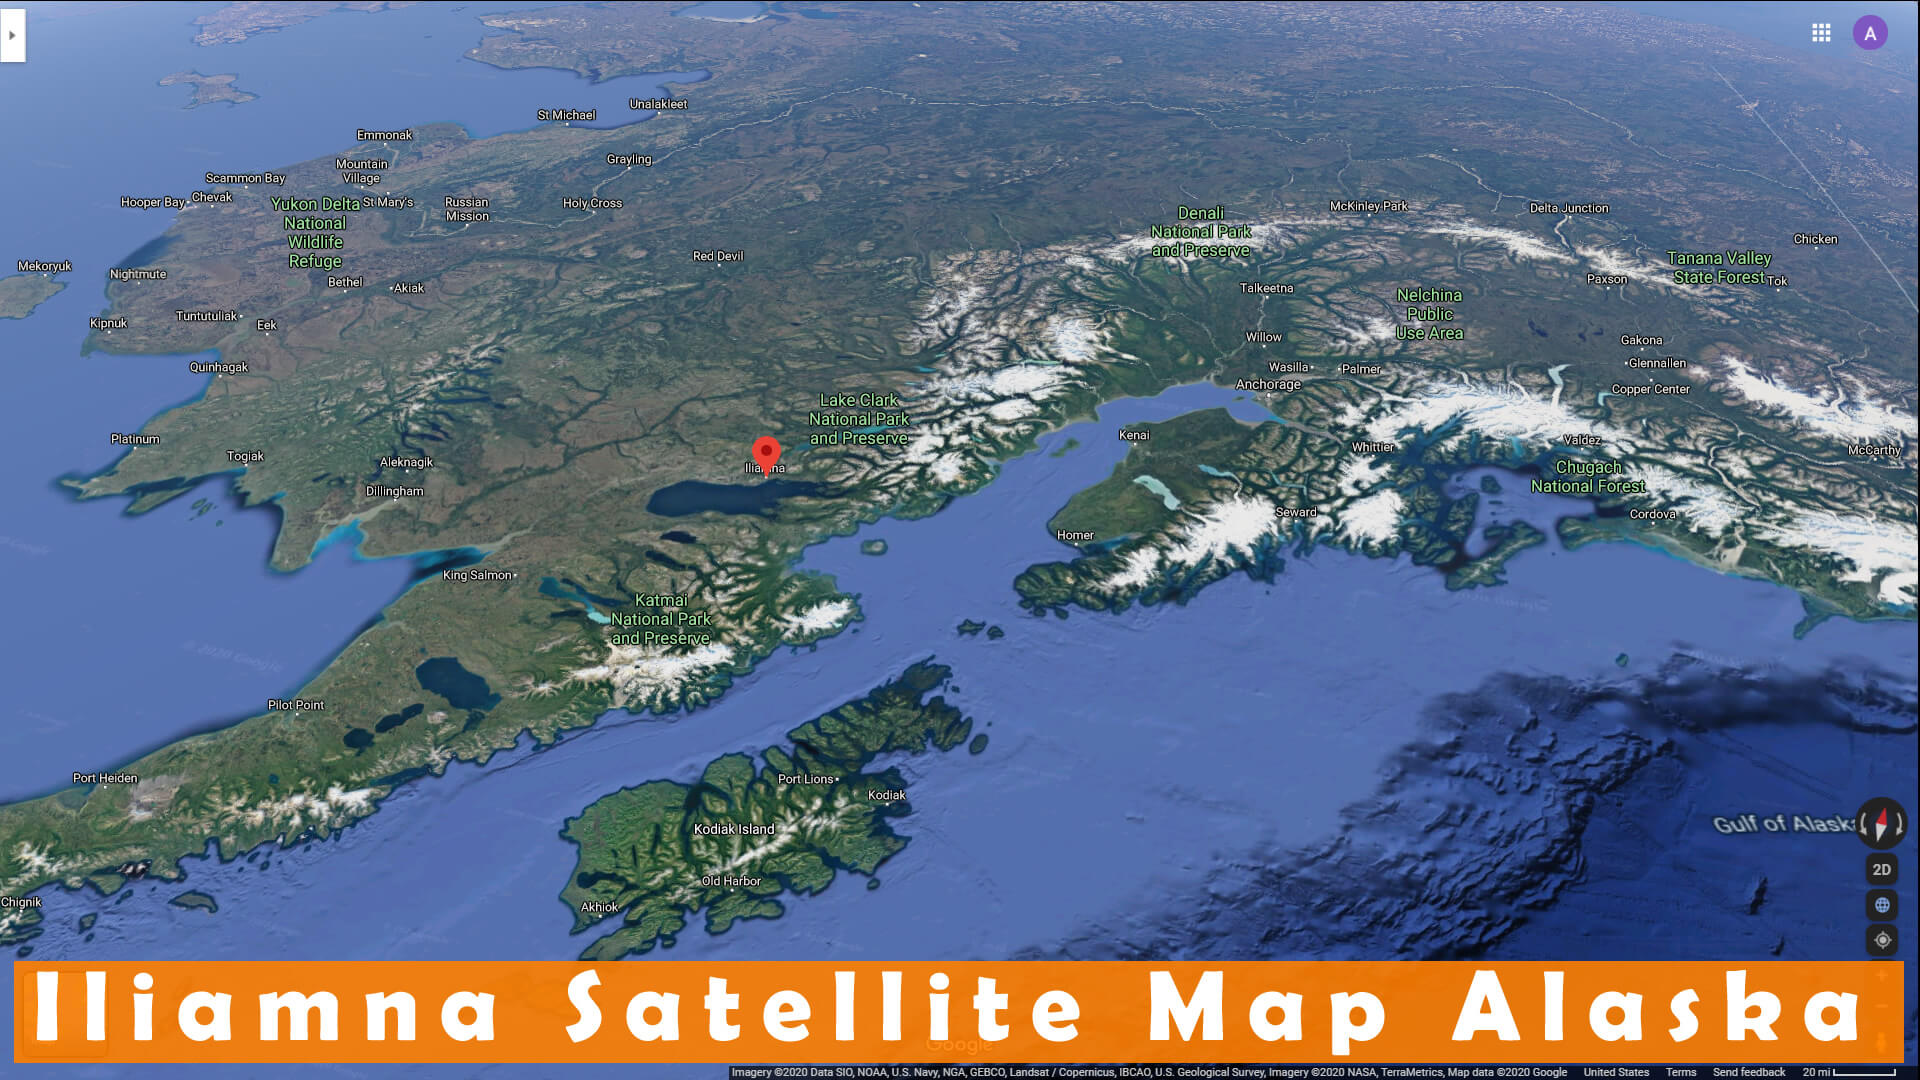 Iliamna Satellite Carte Alaska